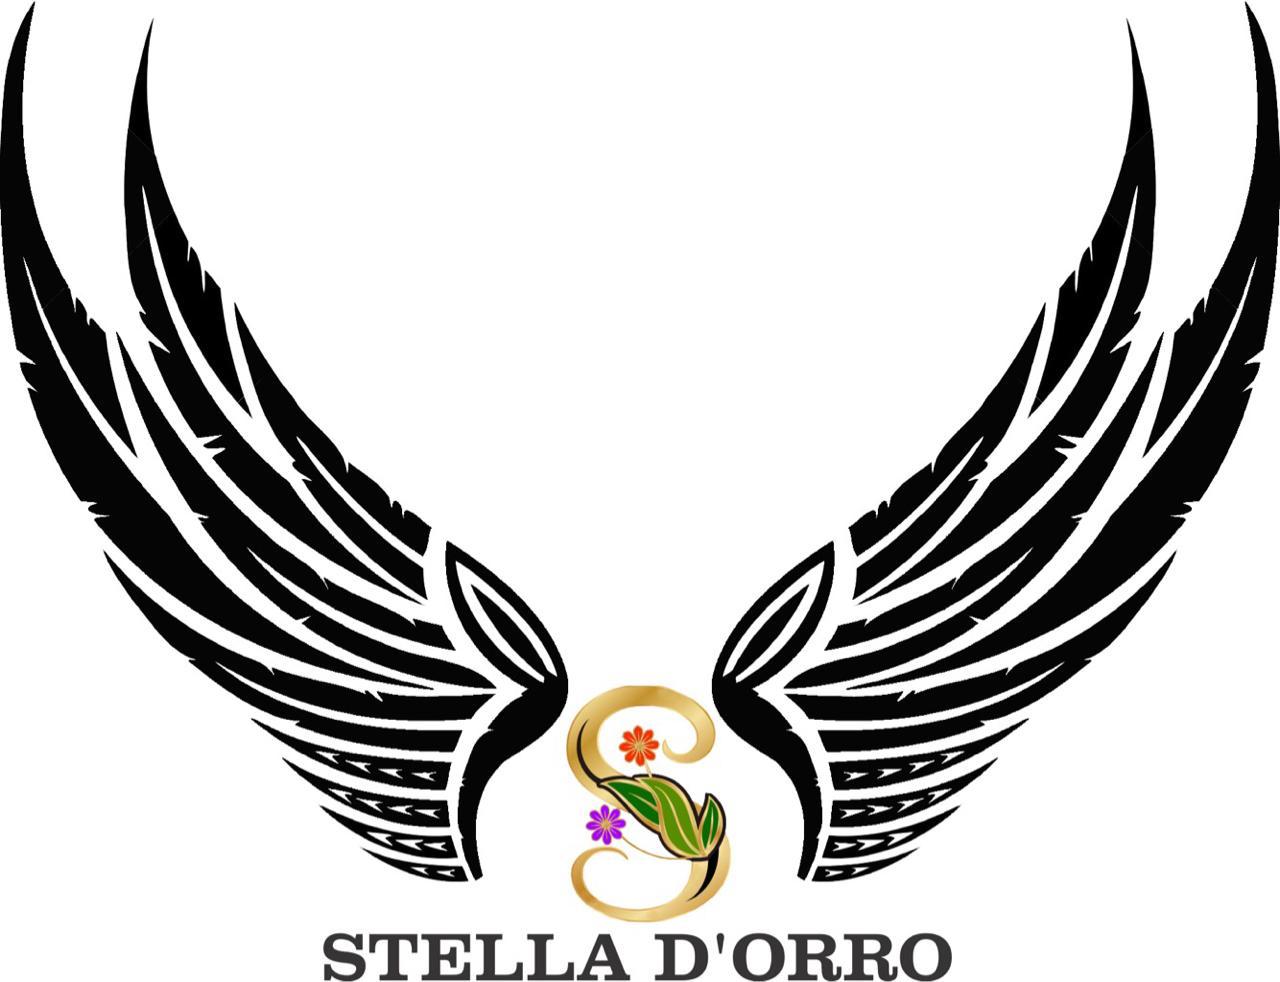 Stella D'orro